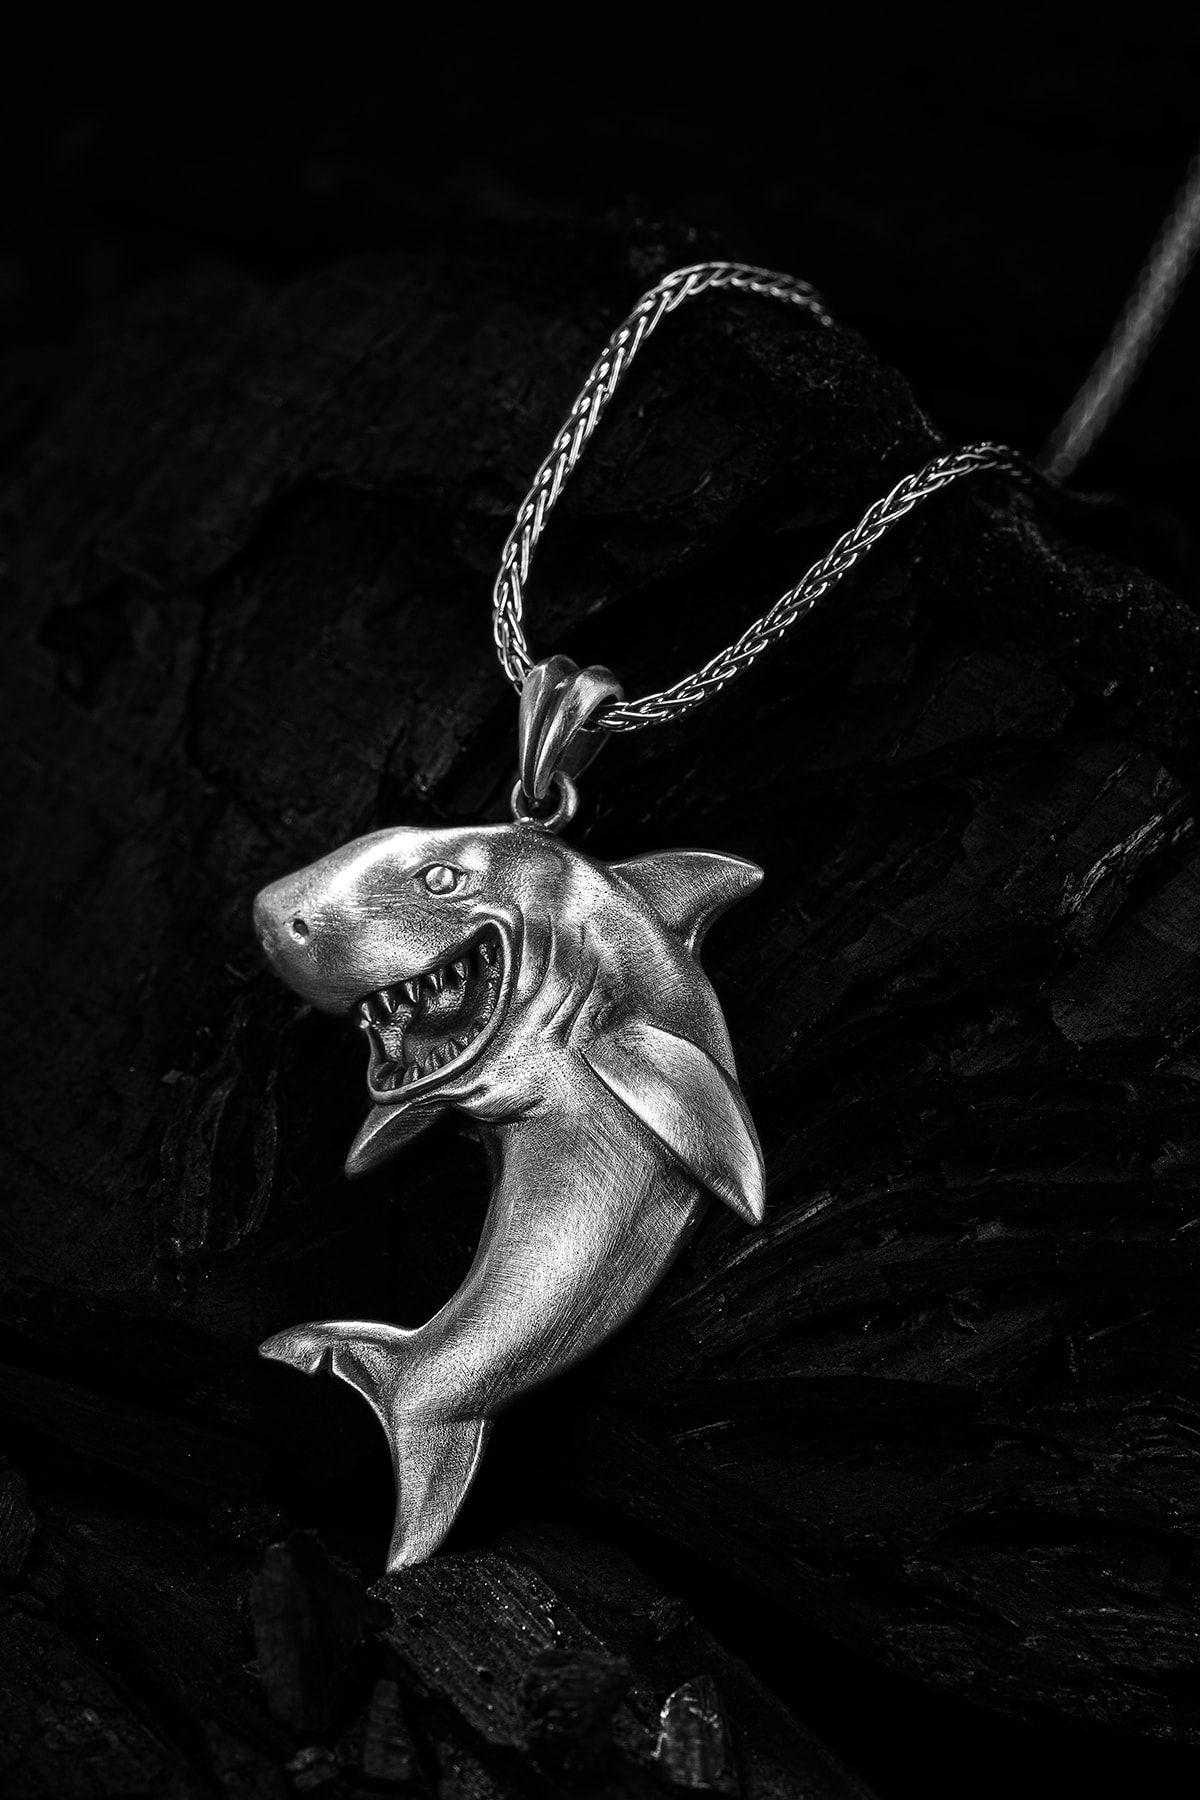 yüzükzade Köpekbalığı Erkek Kolye, Gümüş Erkek Kolye, Vahşi Köpek Balığı Erkek Kolye